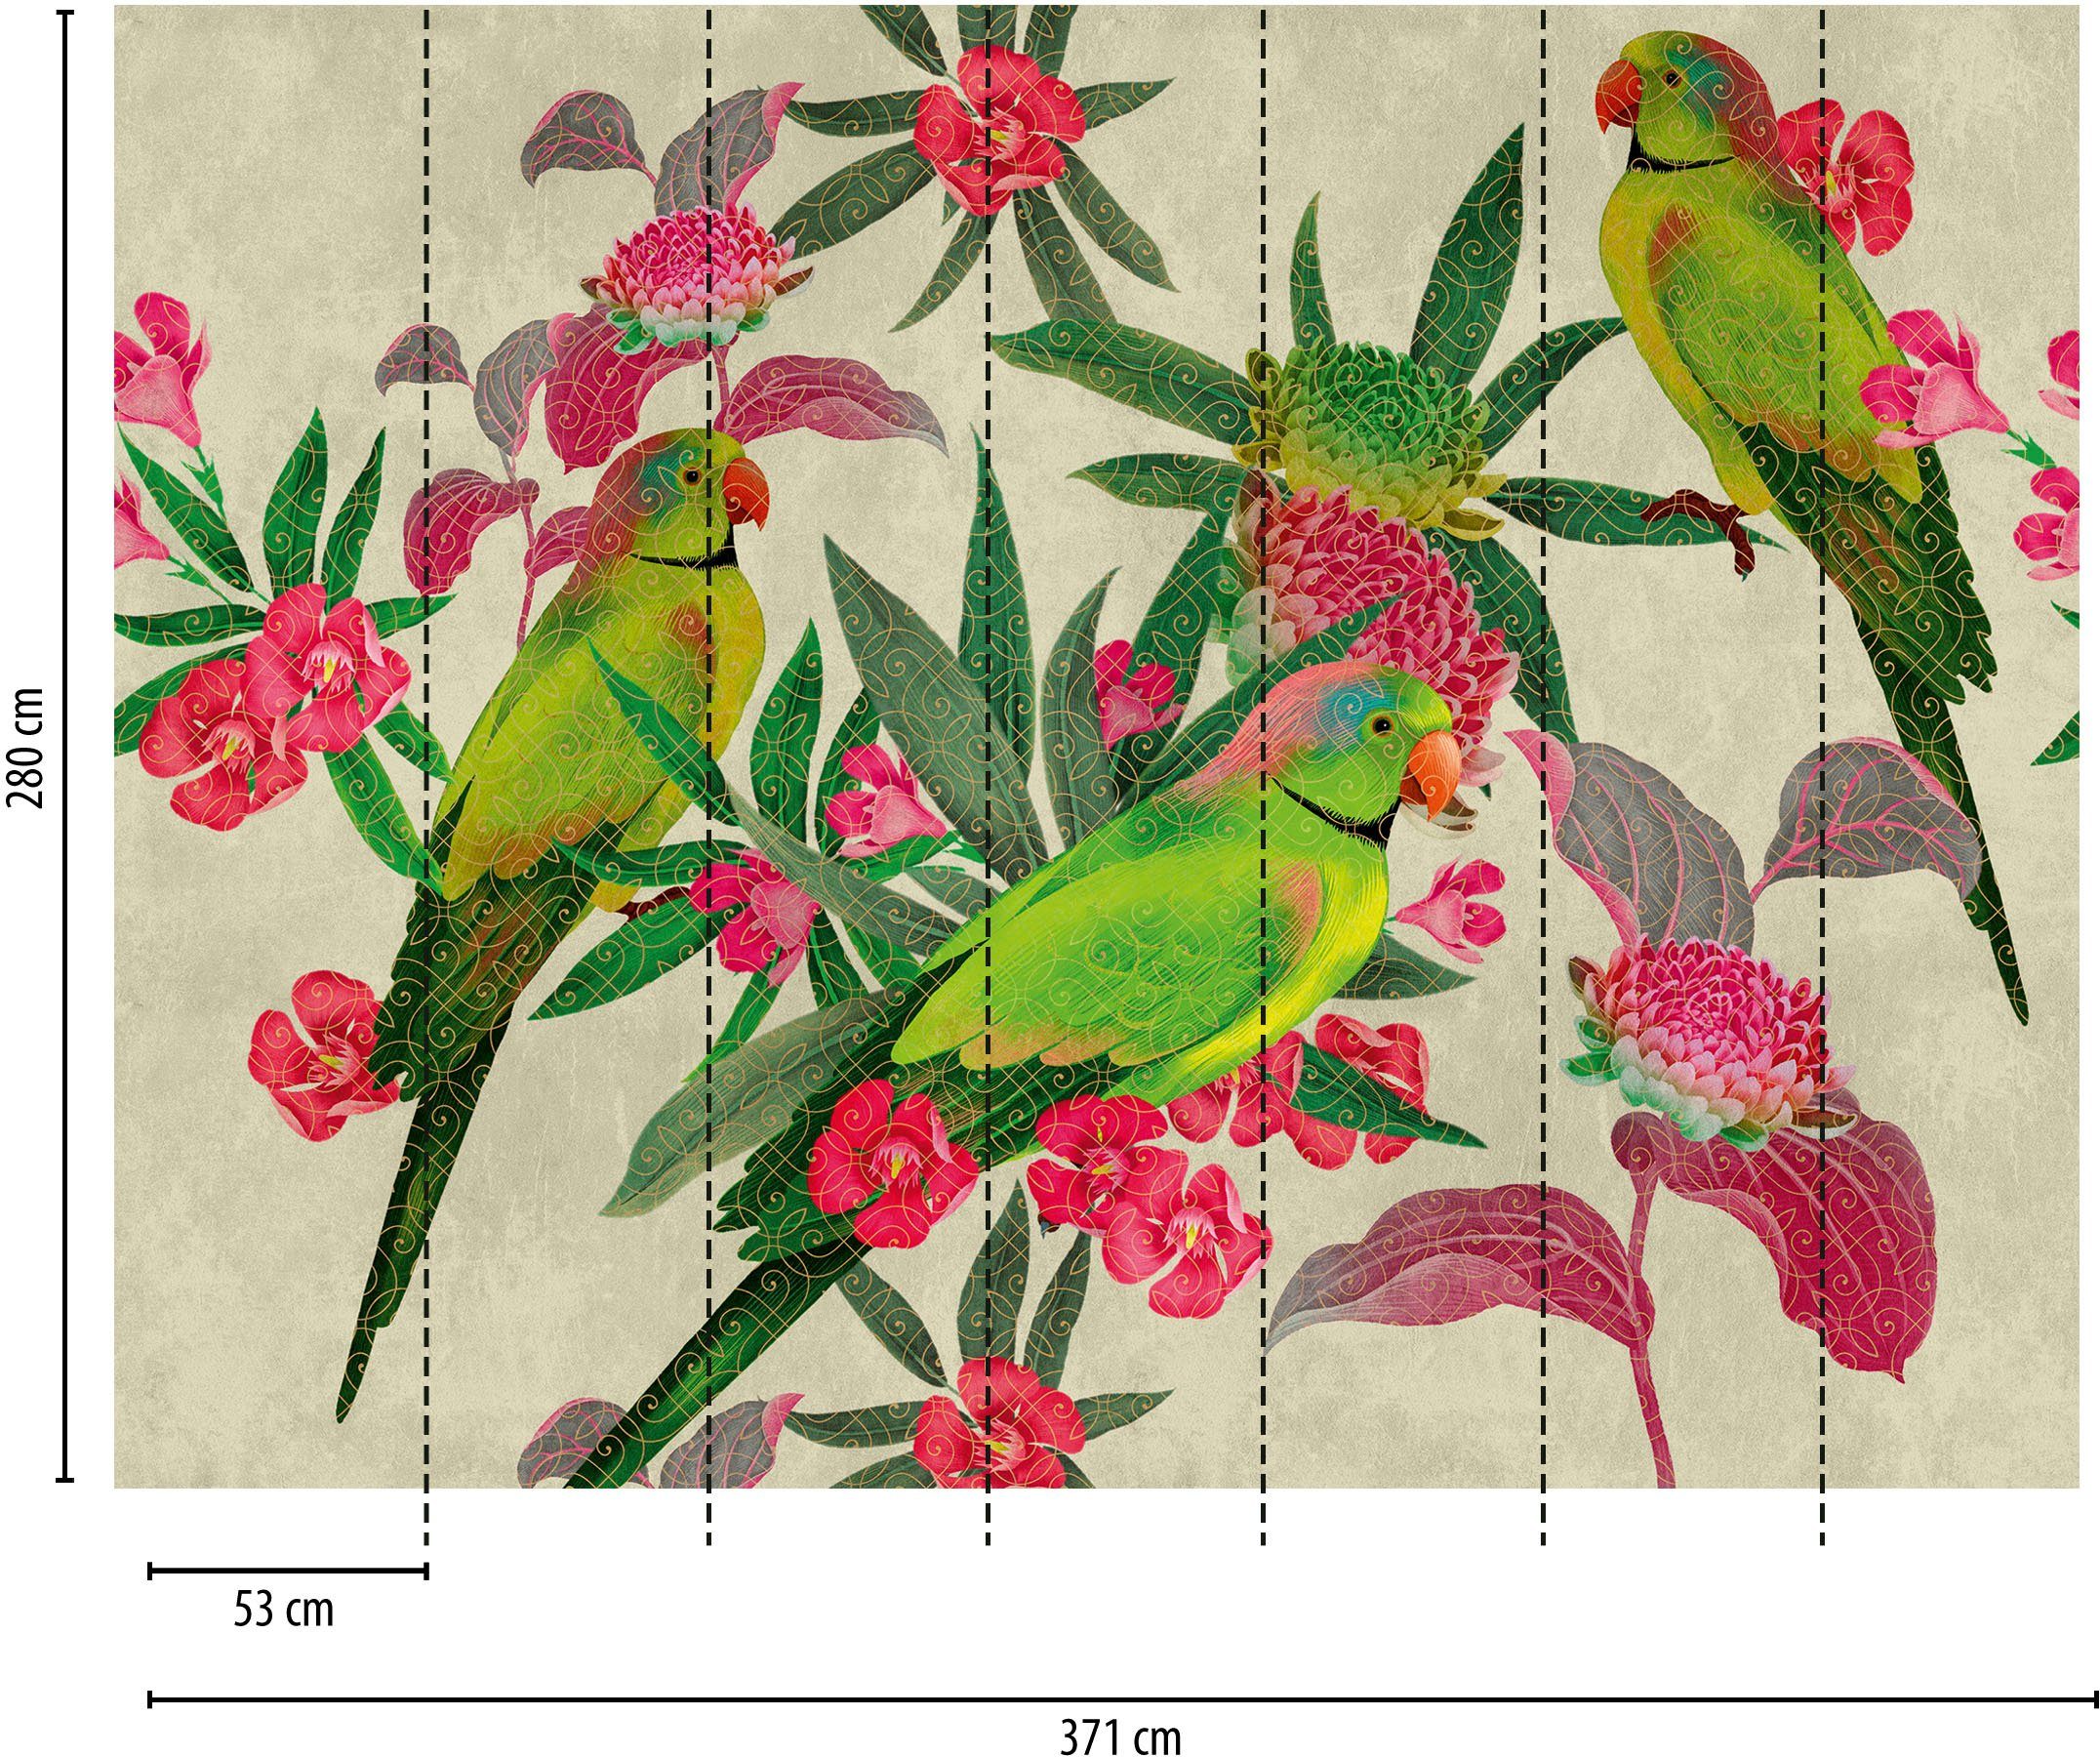 asiatisch, living walls Vögel floral, glatt, Wall, Grün Fototapete Motiv, Dschungel The Rot Fototapete Tapete Rosa